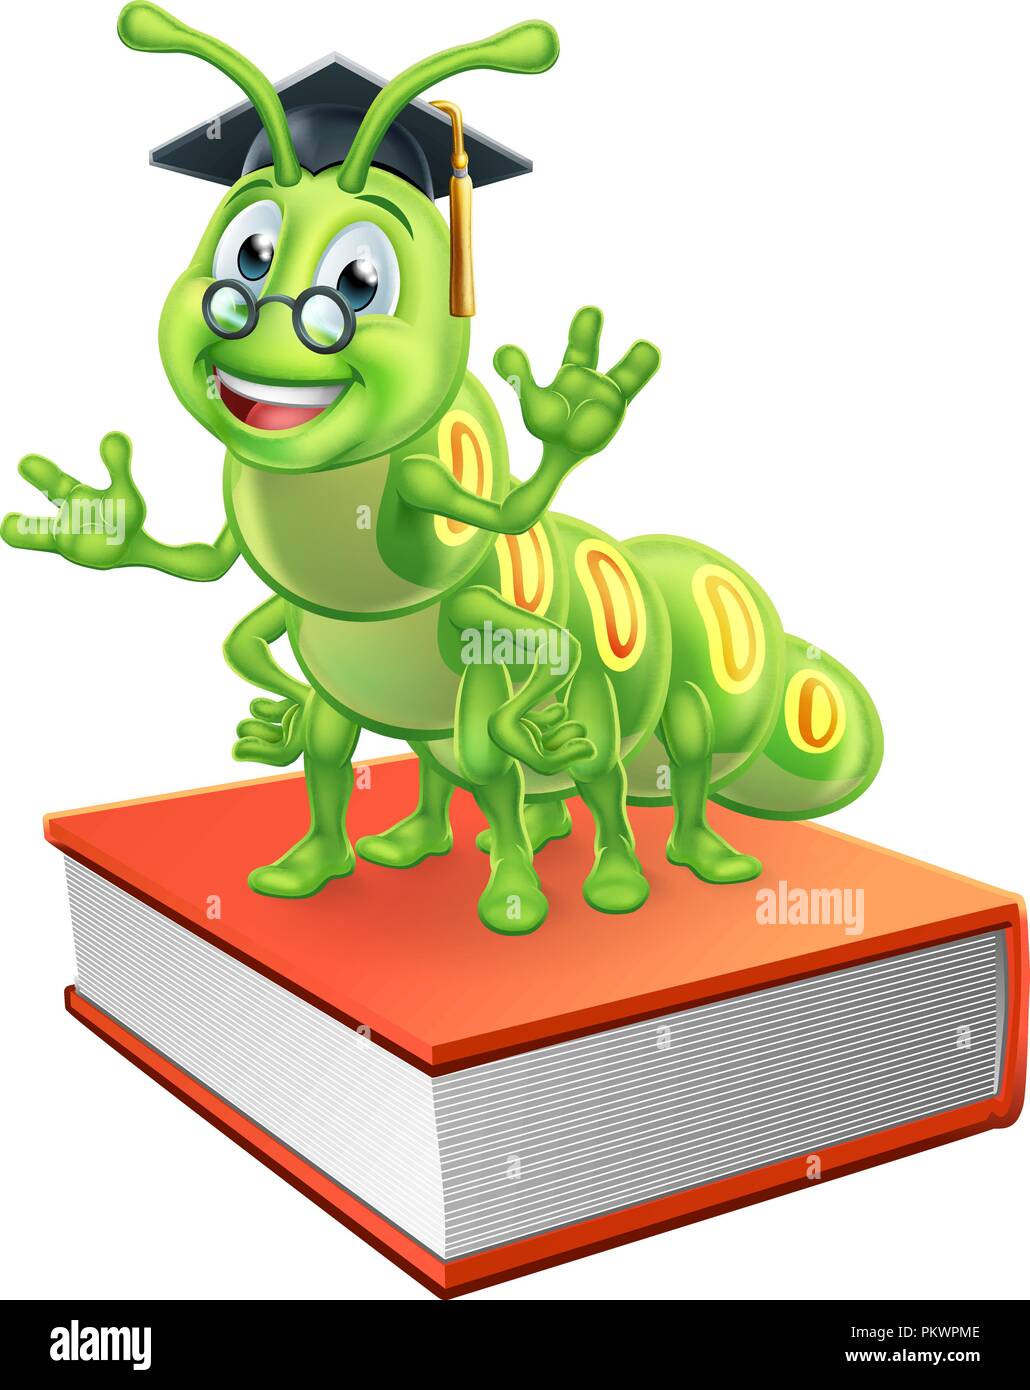 Absolvent Caterpillar Bücherwurm Wurm auf dem Buch Stock Vektor